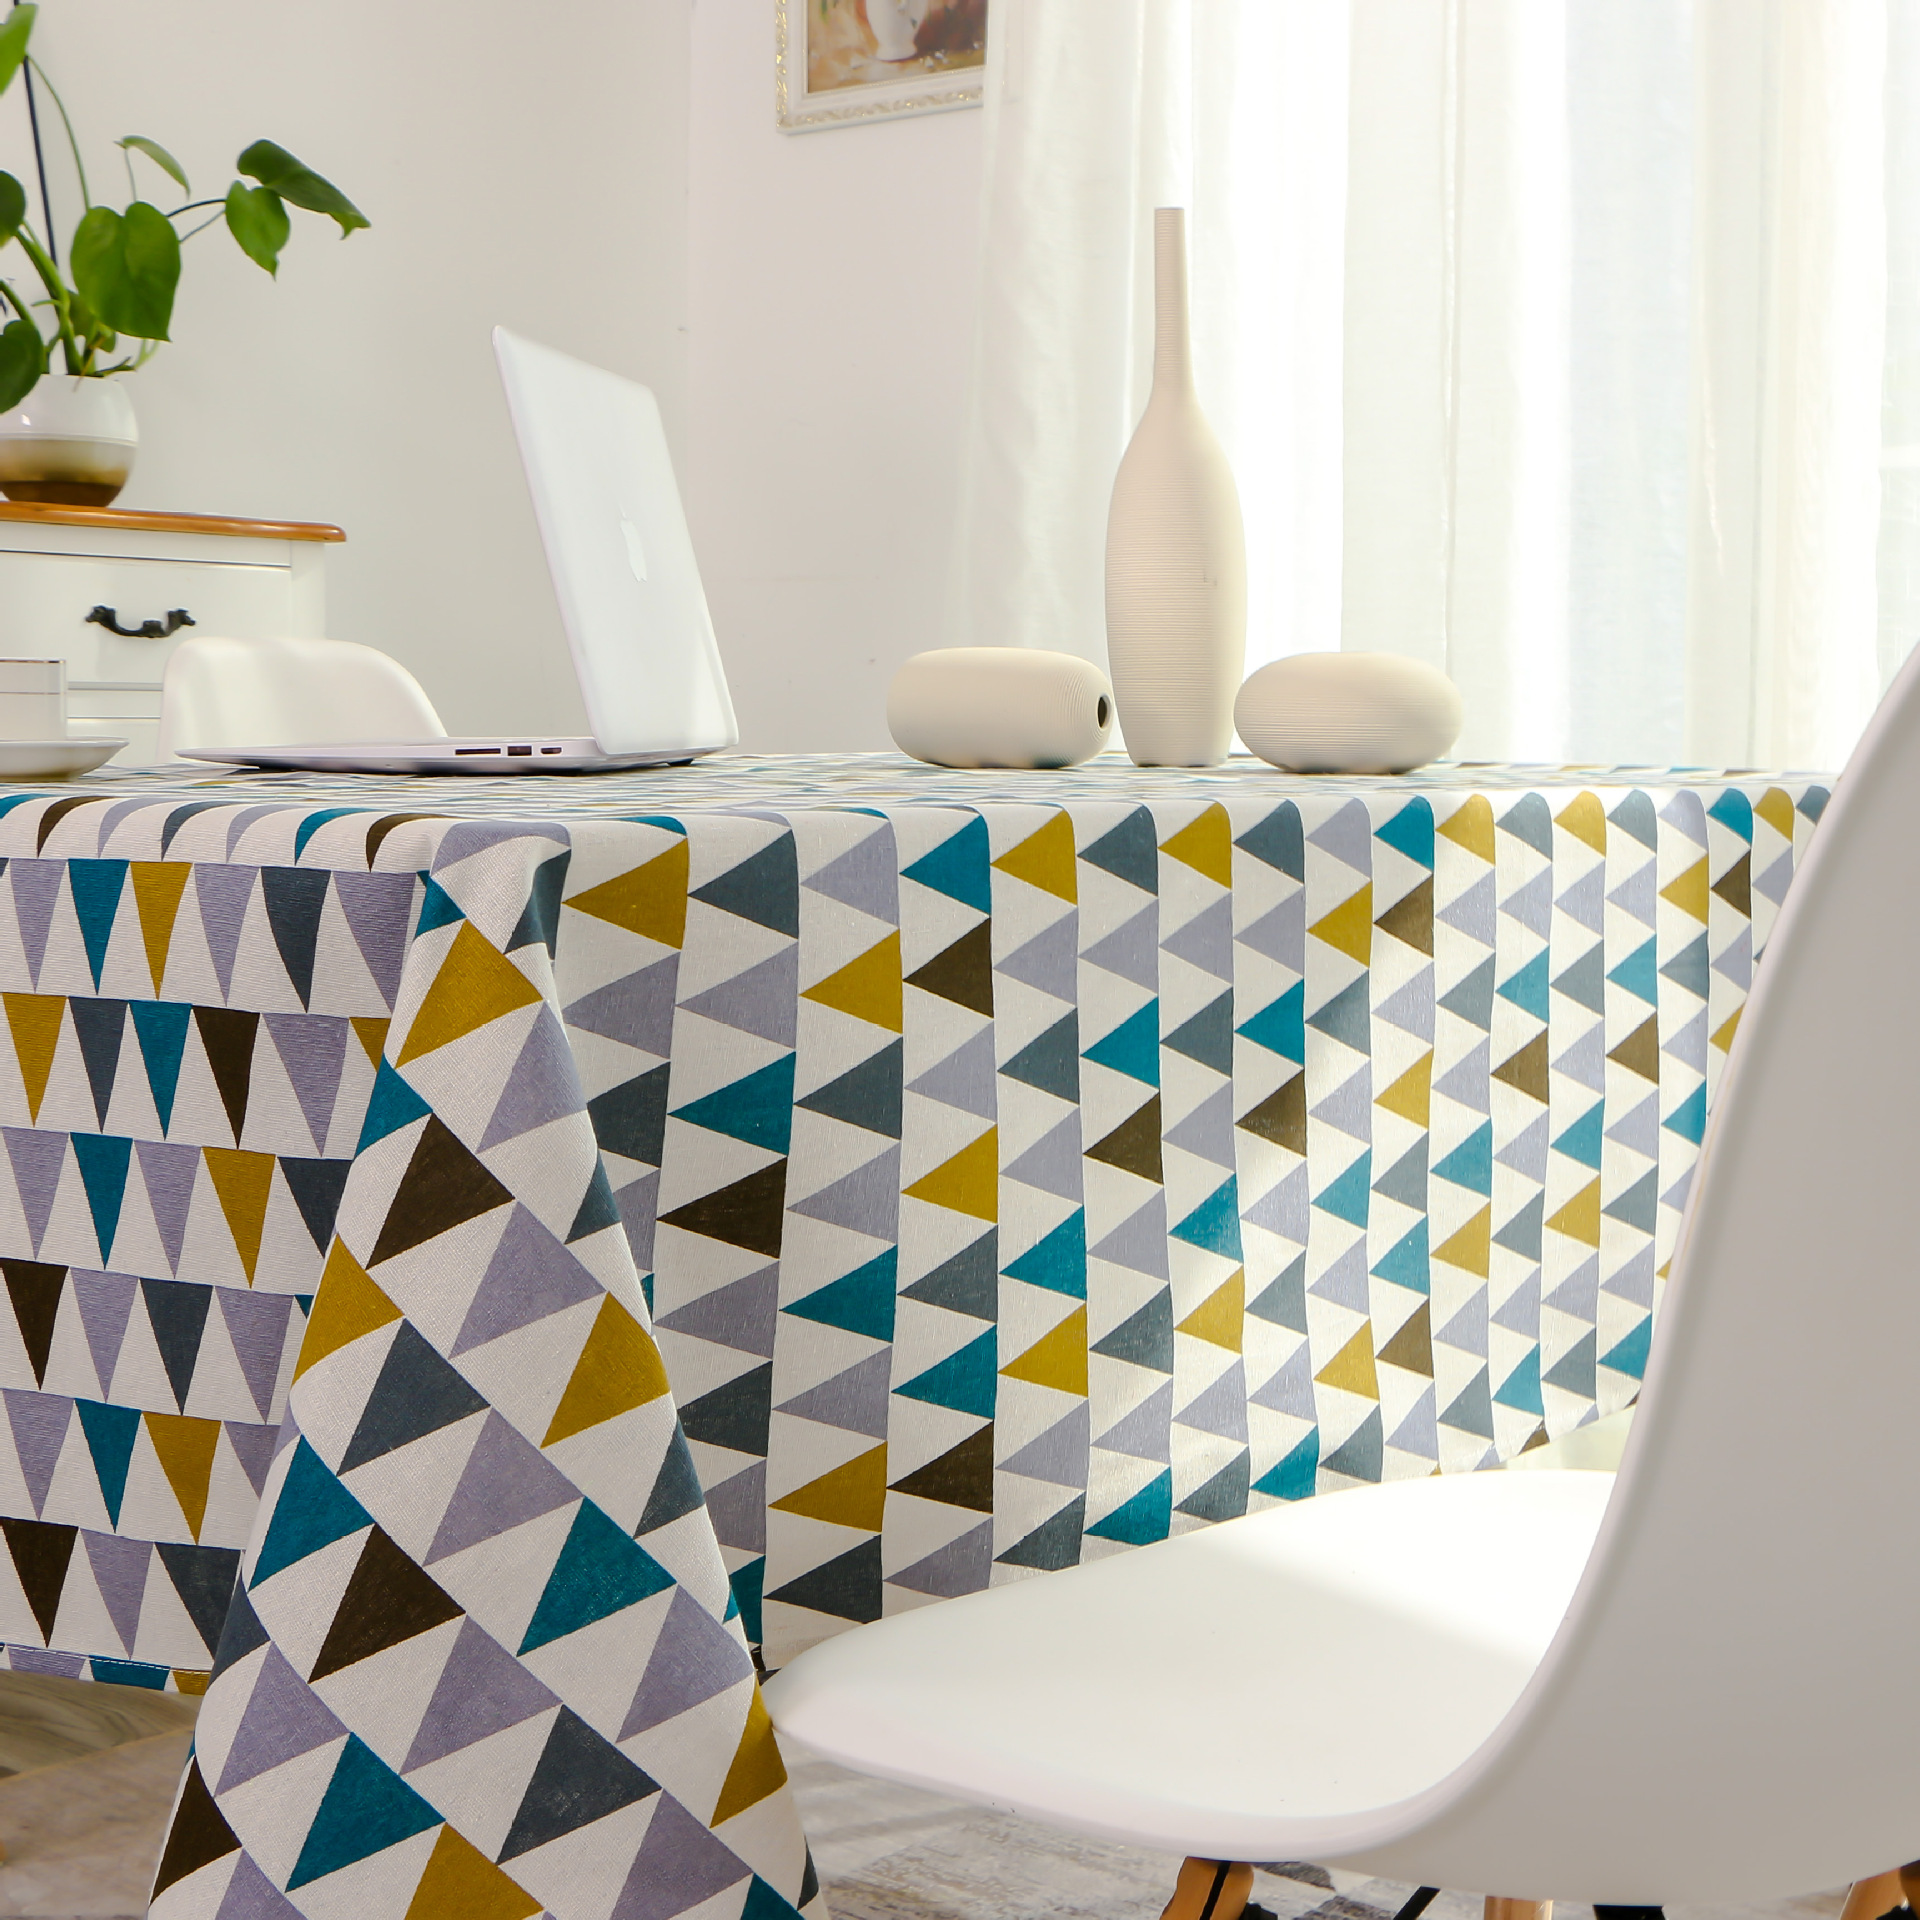 彩色三角形布艺印花棉麻桌布 家用简约餐桌台布冰箱茶几盖布批发